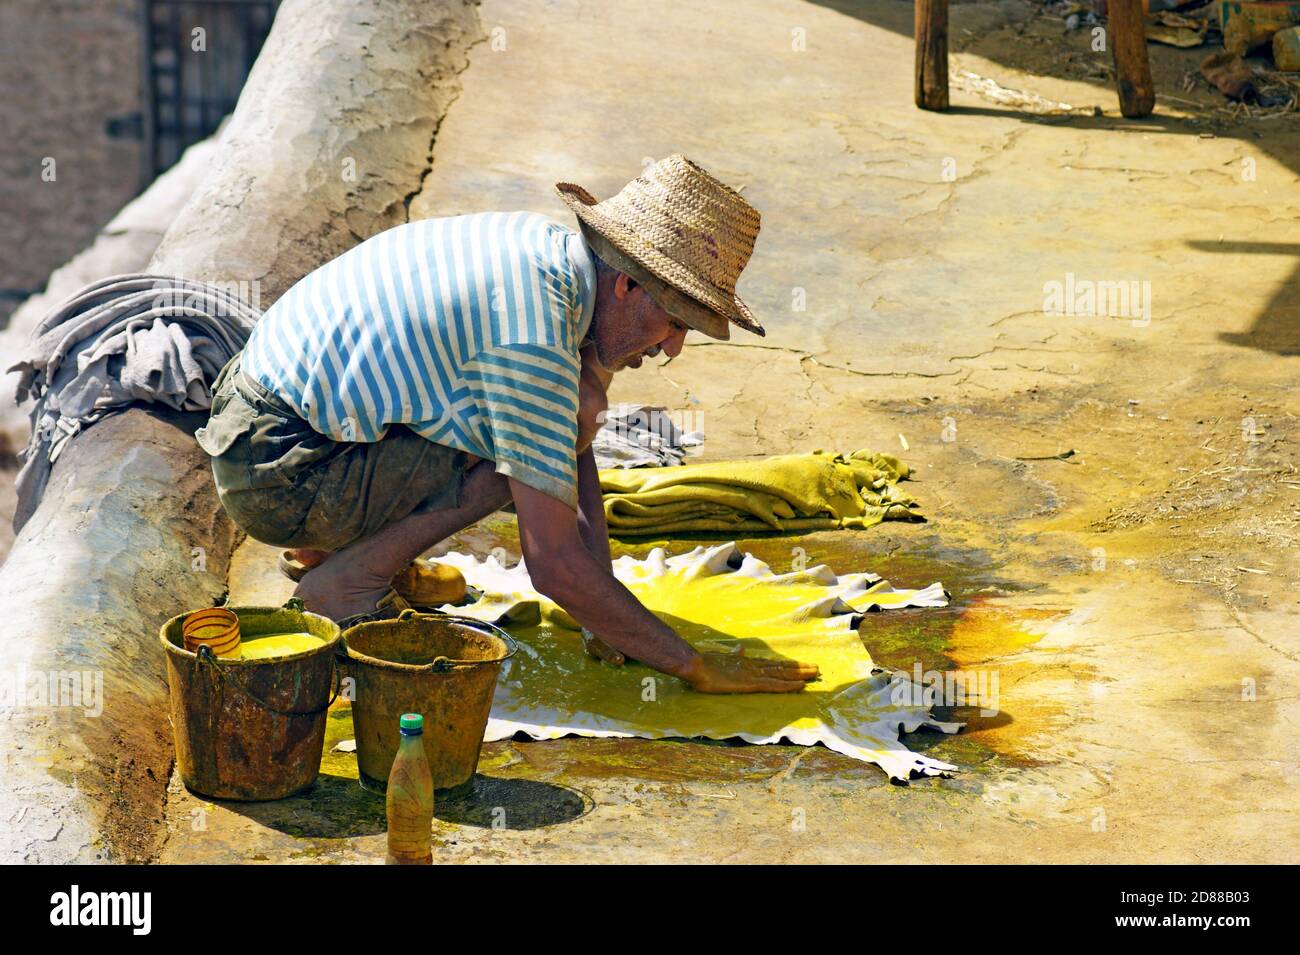 Un vecchio uomo marocchino tintura a mano la borra di un colore giallo brillante come parte del processo di produzione della pelle presso la conceria Chouara a Fez, Marocco. Foto Stock